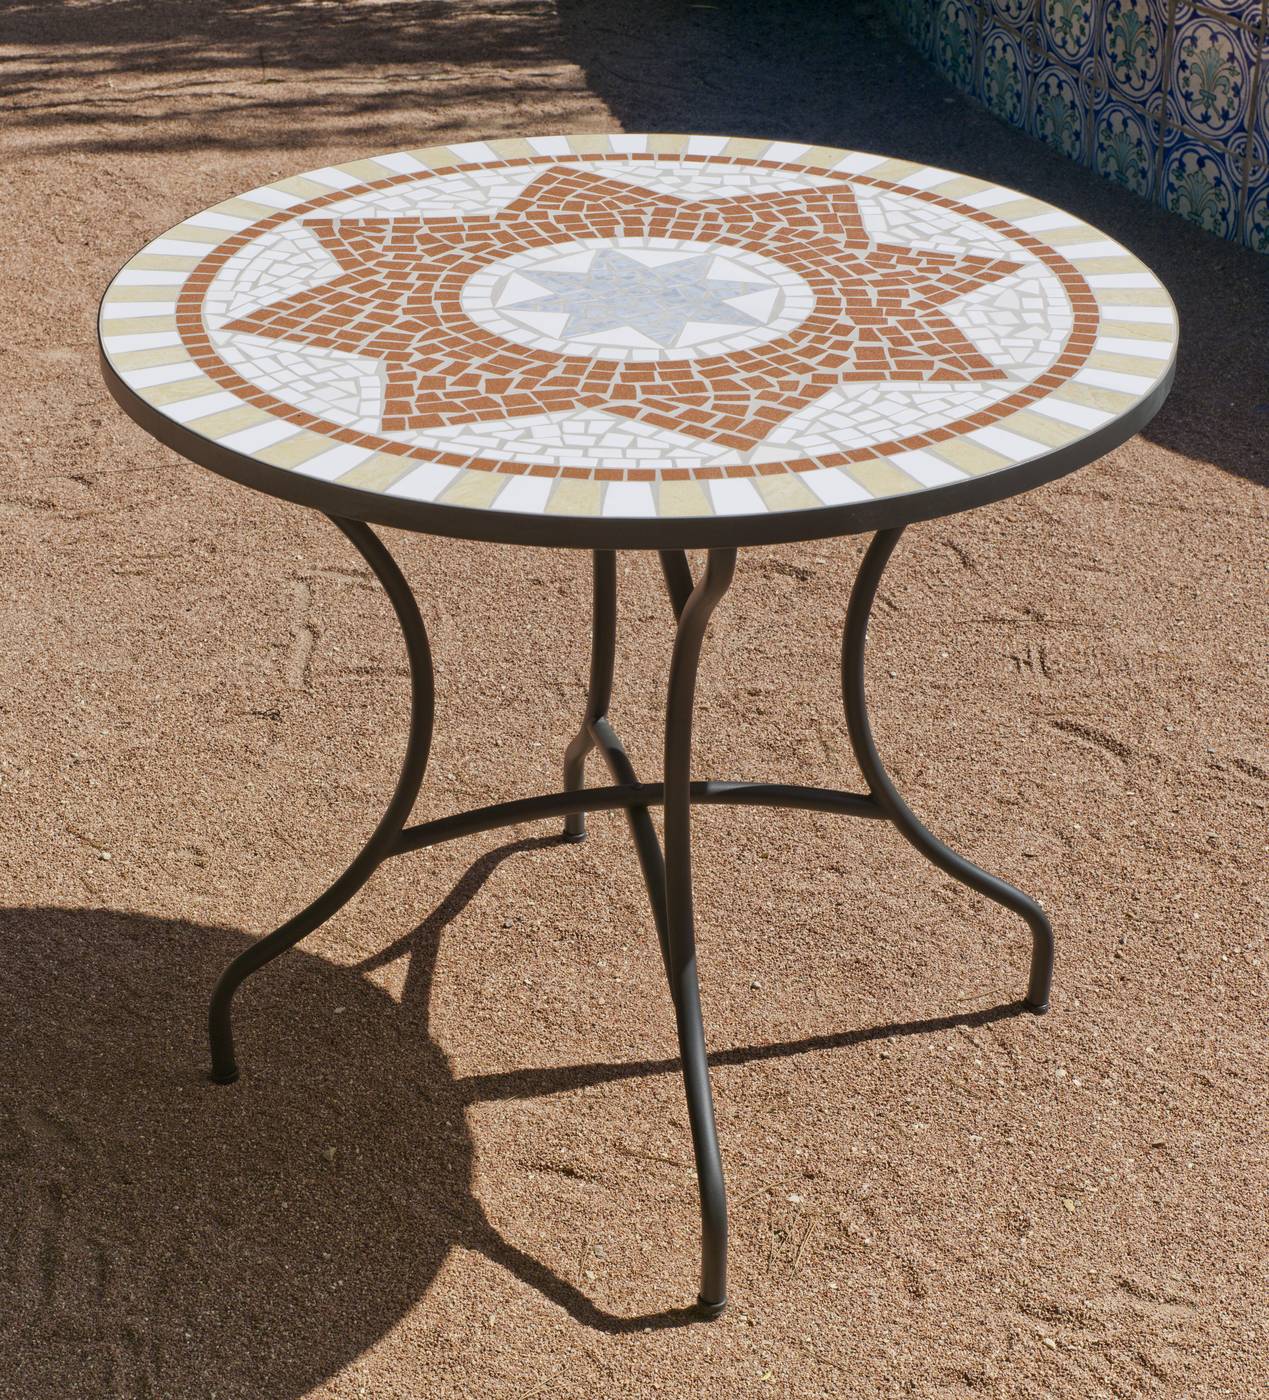 Conjunto Mosaico Aney-Vigo 100-4 - Conjunto de acero forjado color bronce: 1 mesa de forja con panel mosaico + 4 sillones de forja con cojines